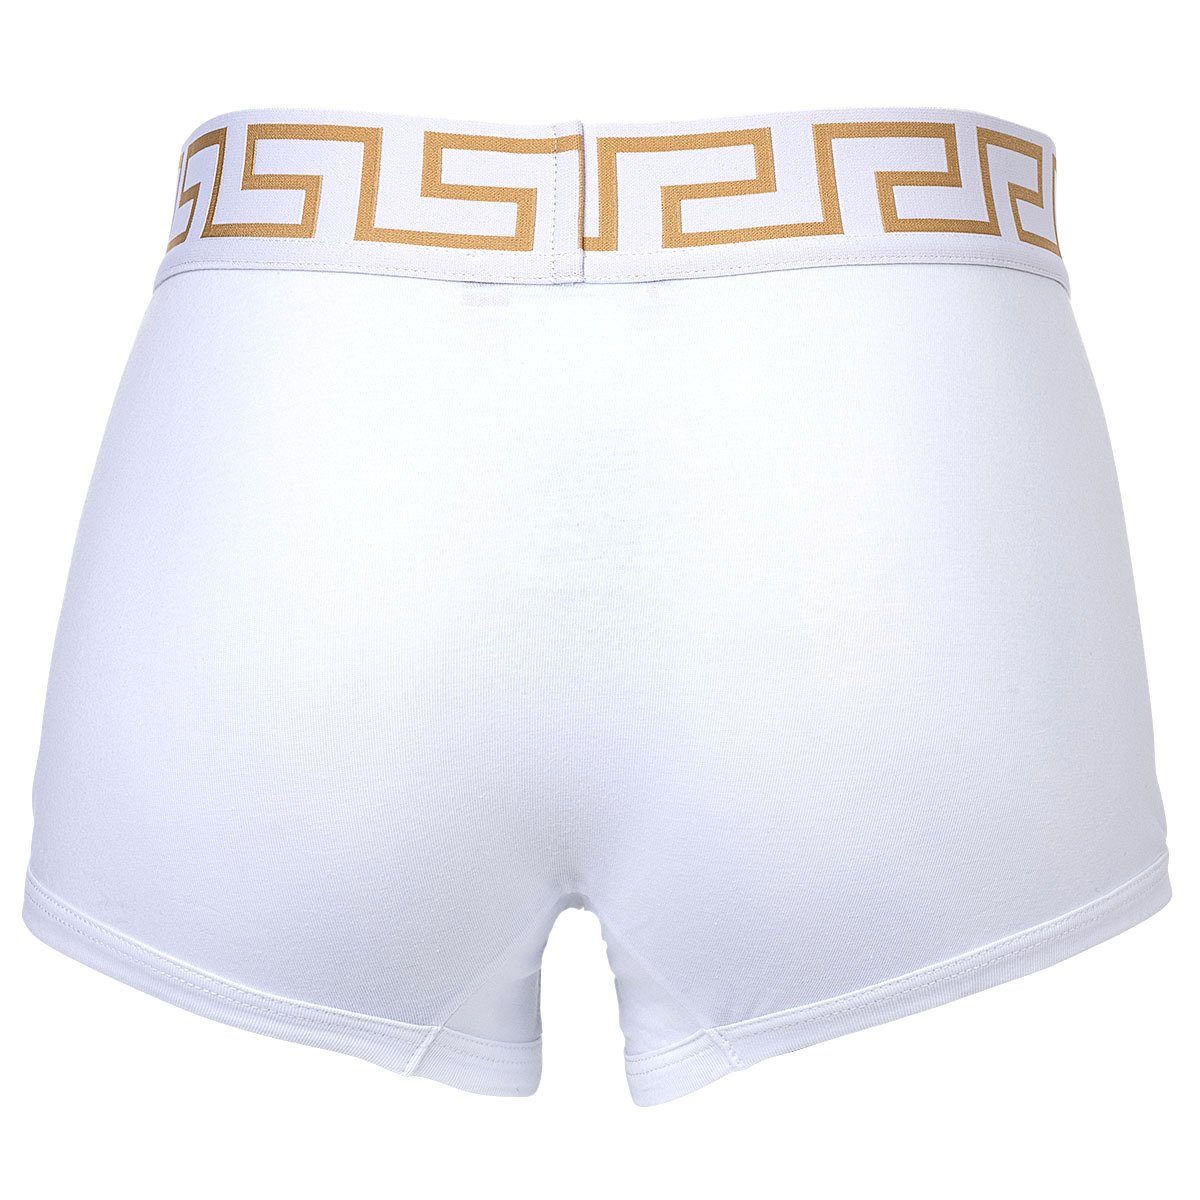 Versace - 3er Boxer Slip Pack Herren Schwarz/Grau/Weiß Baumwolle Shorts, TOPEKA,